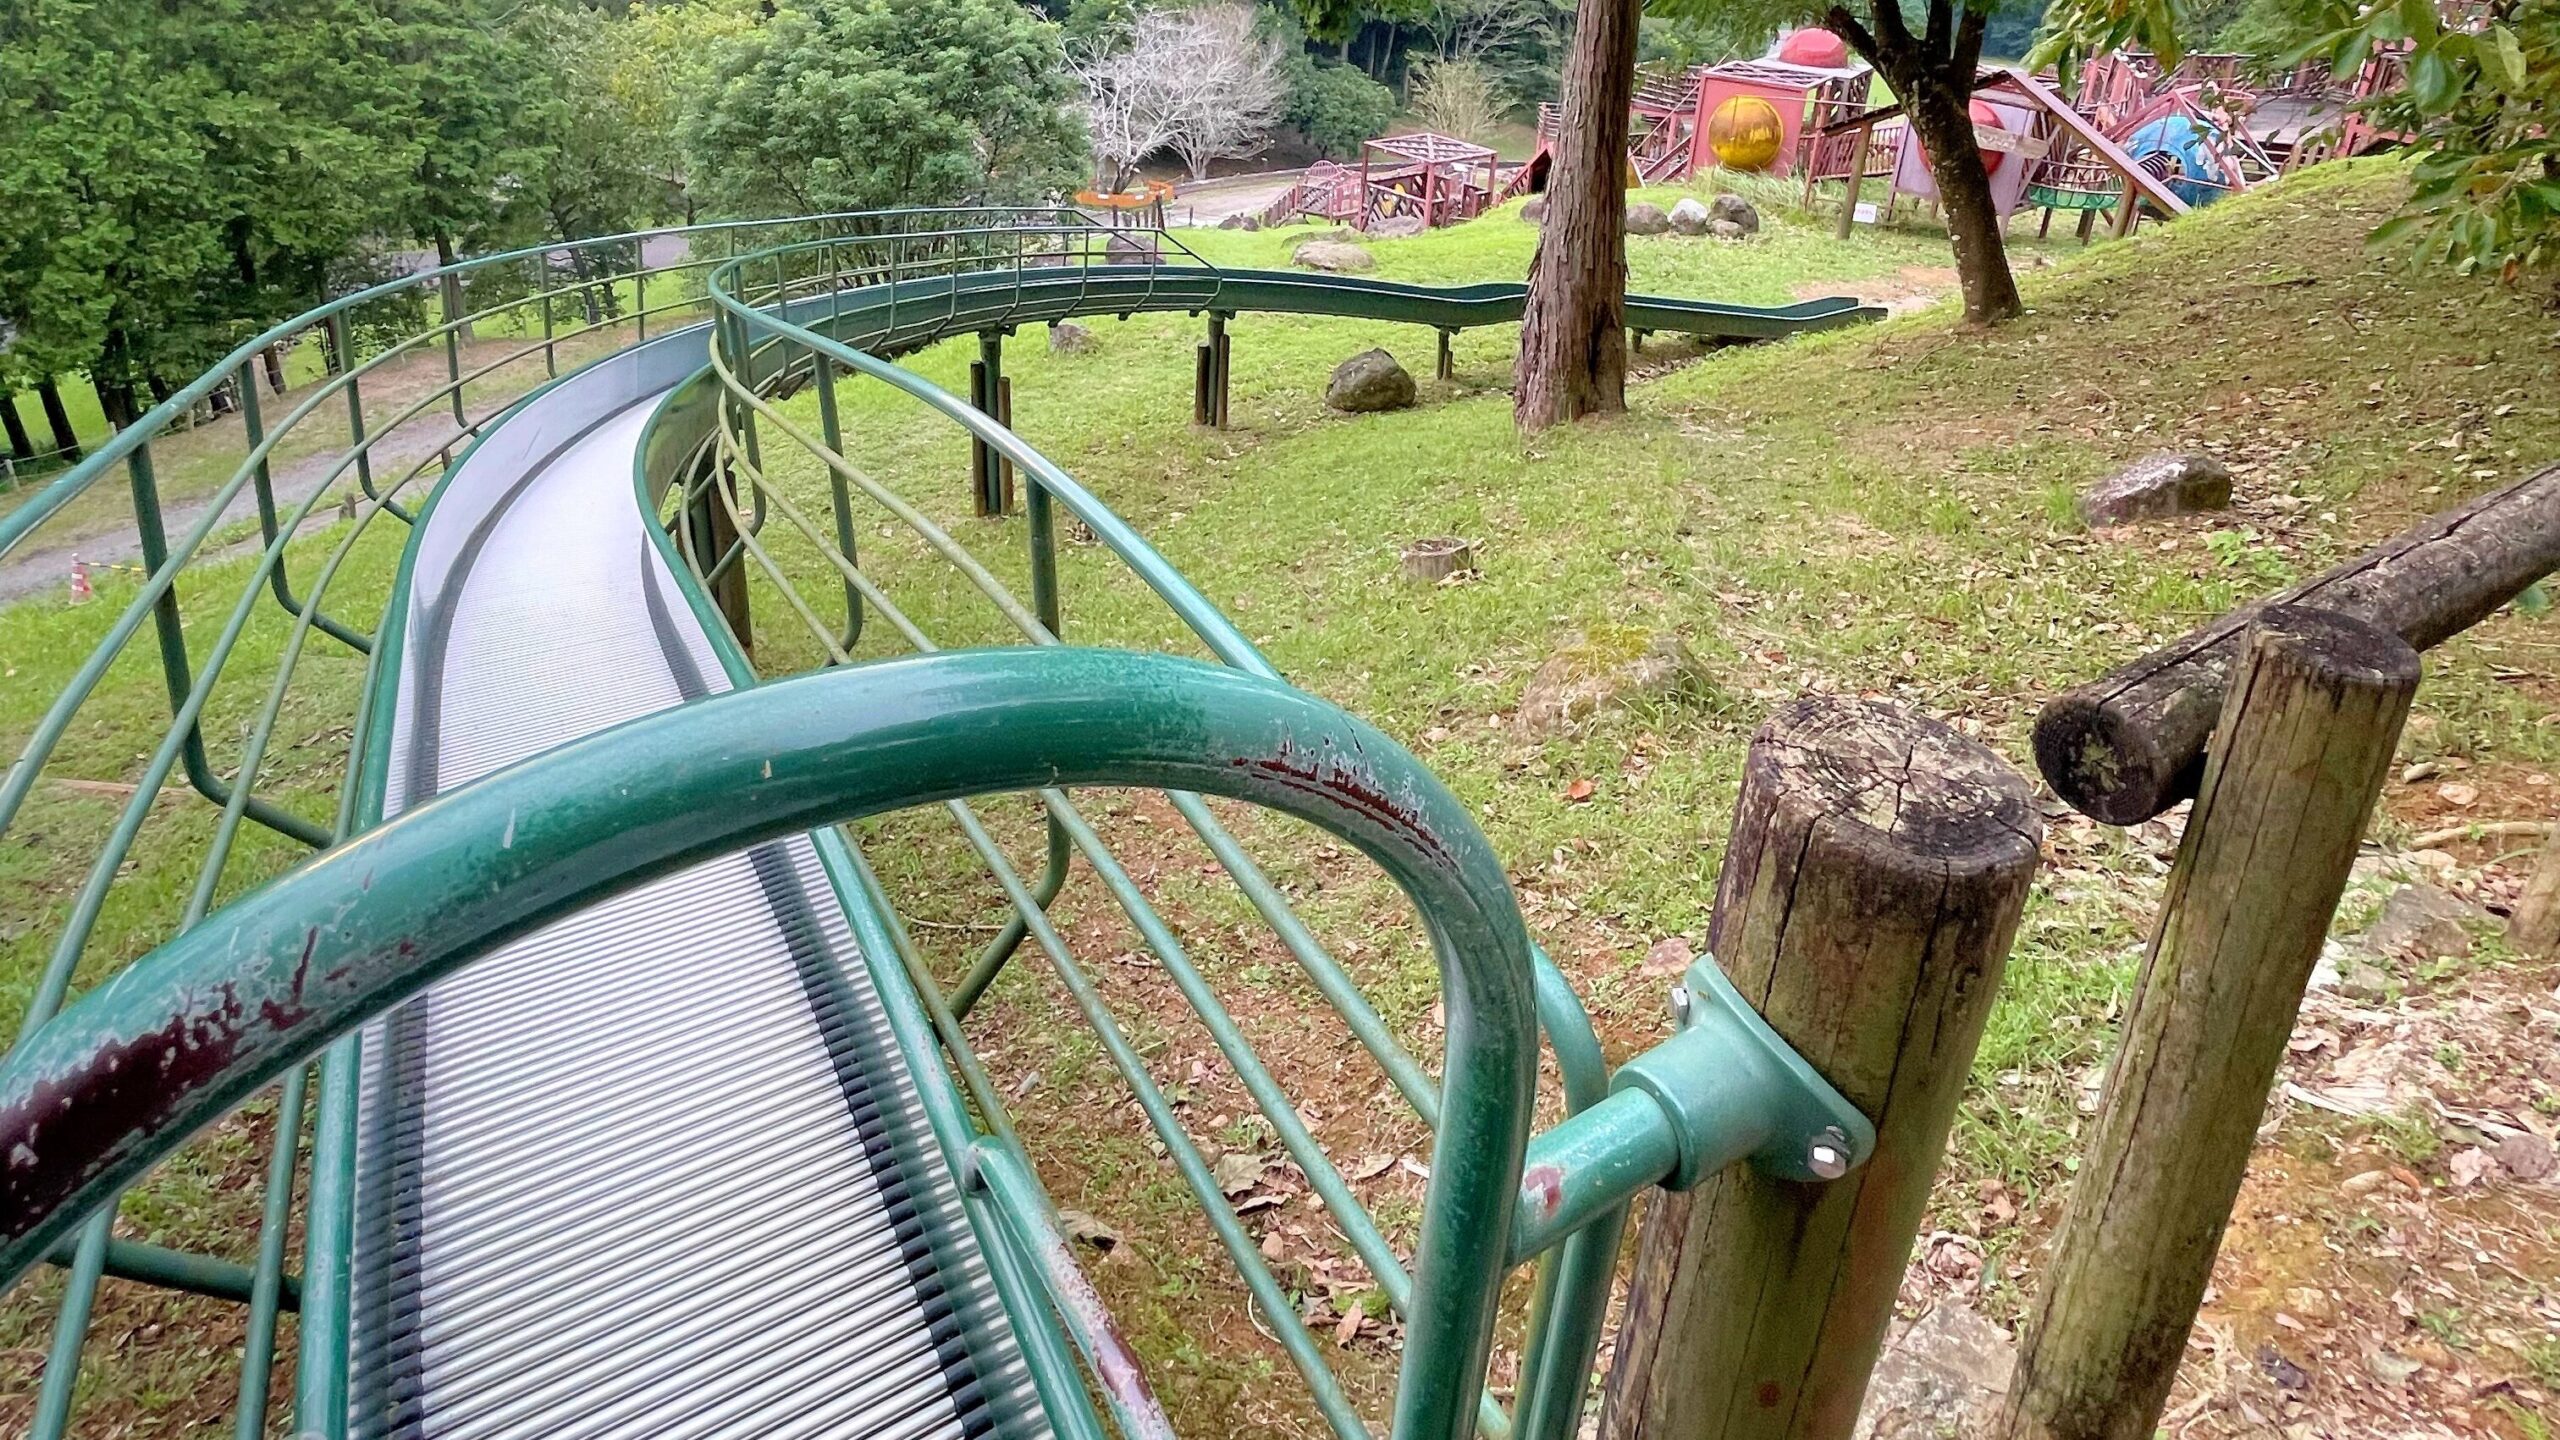 鹿児島県立北薩広域公園内にある大型冒険遊具の滑り台